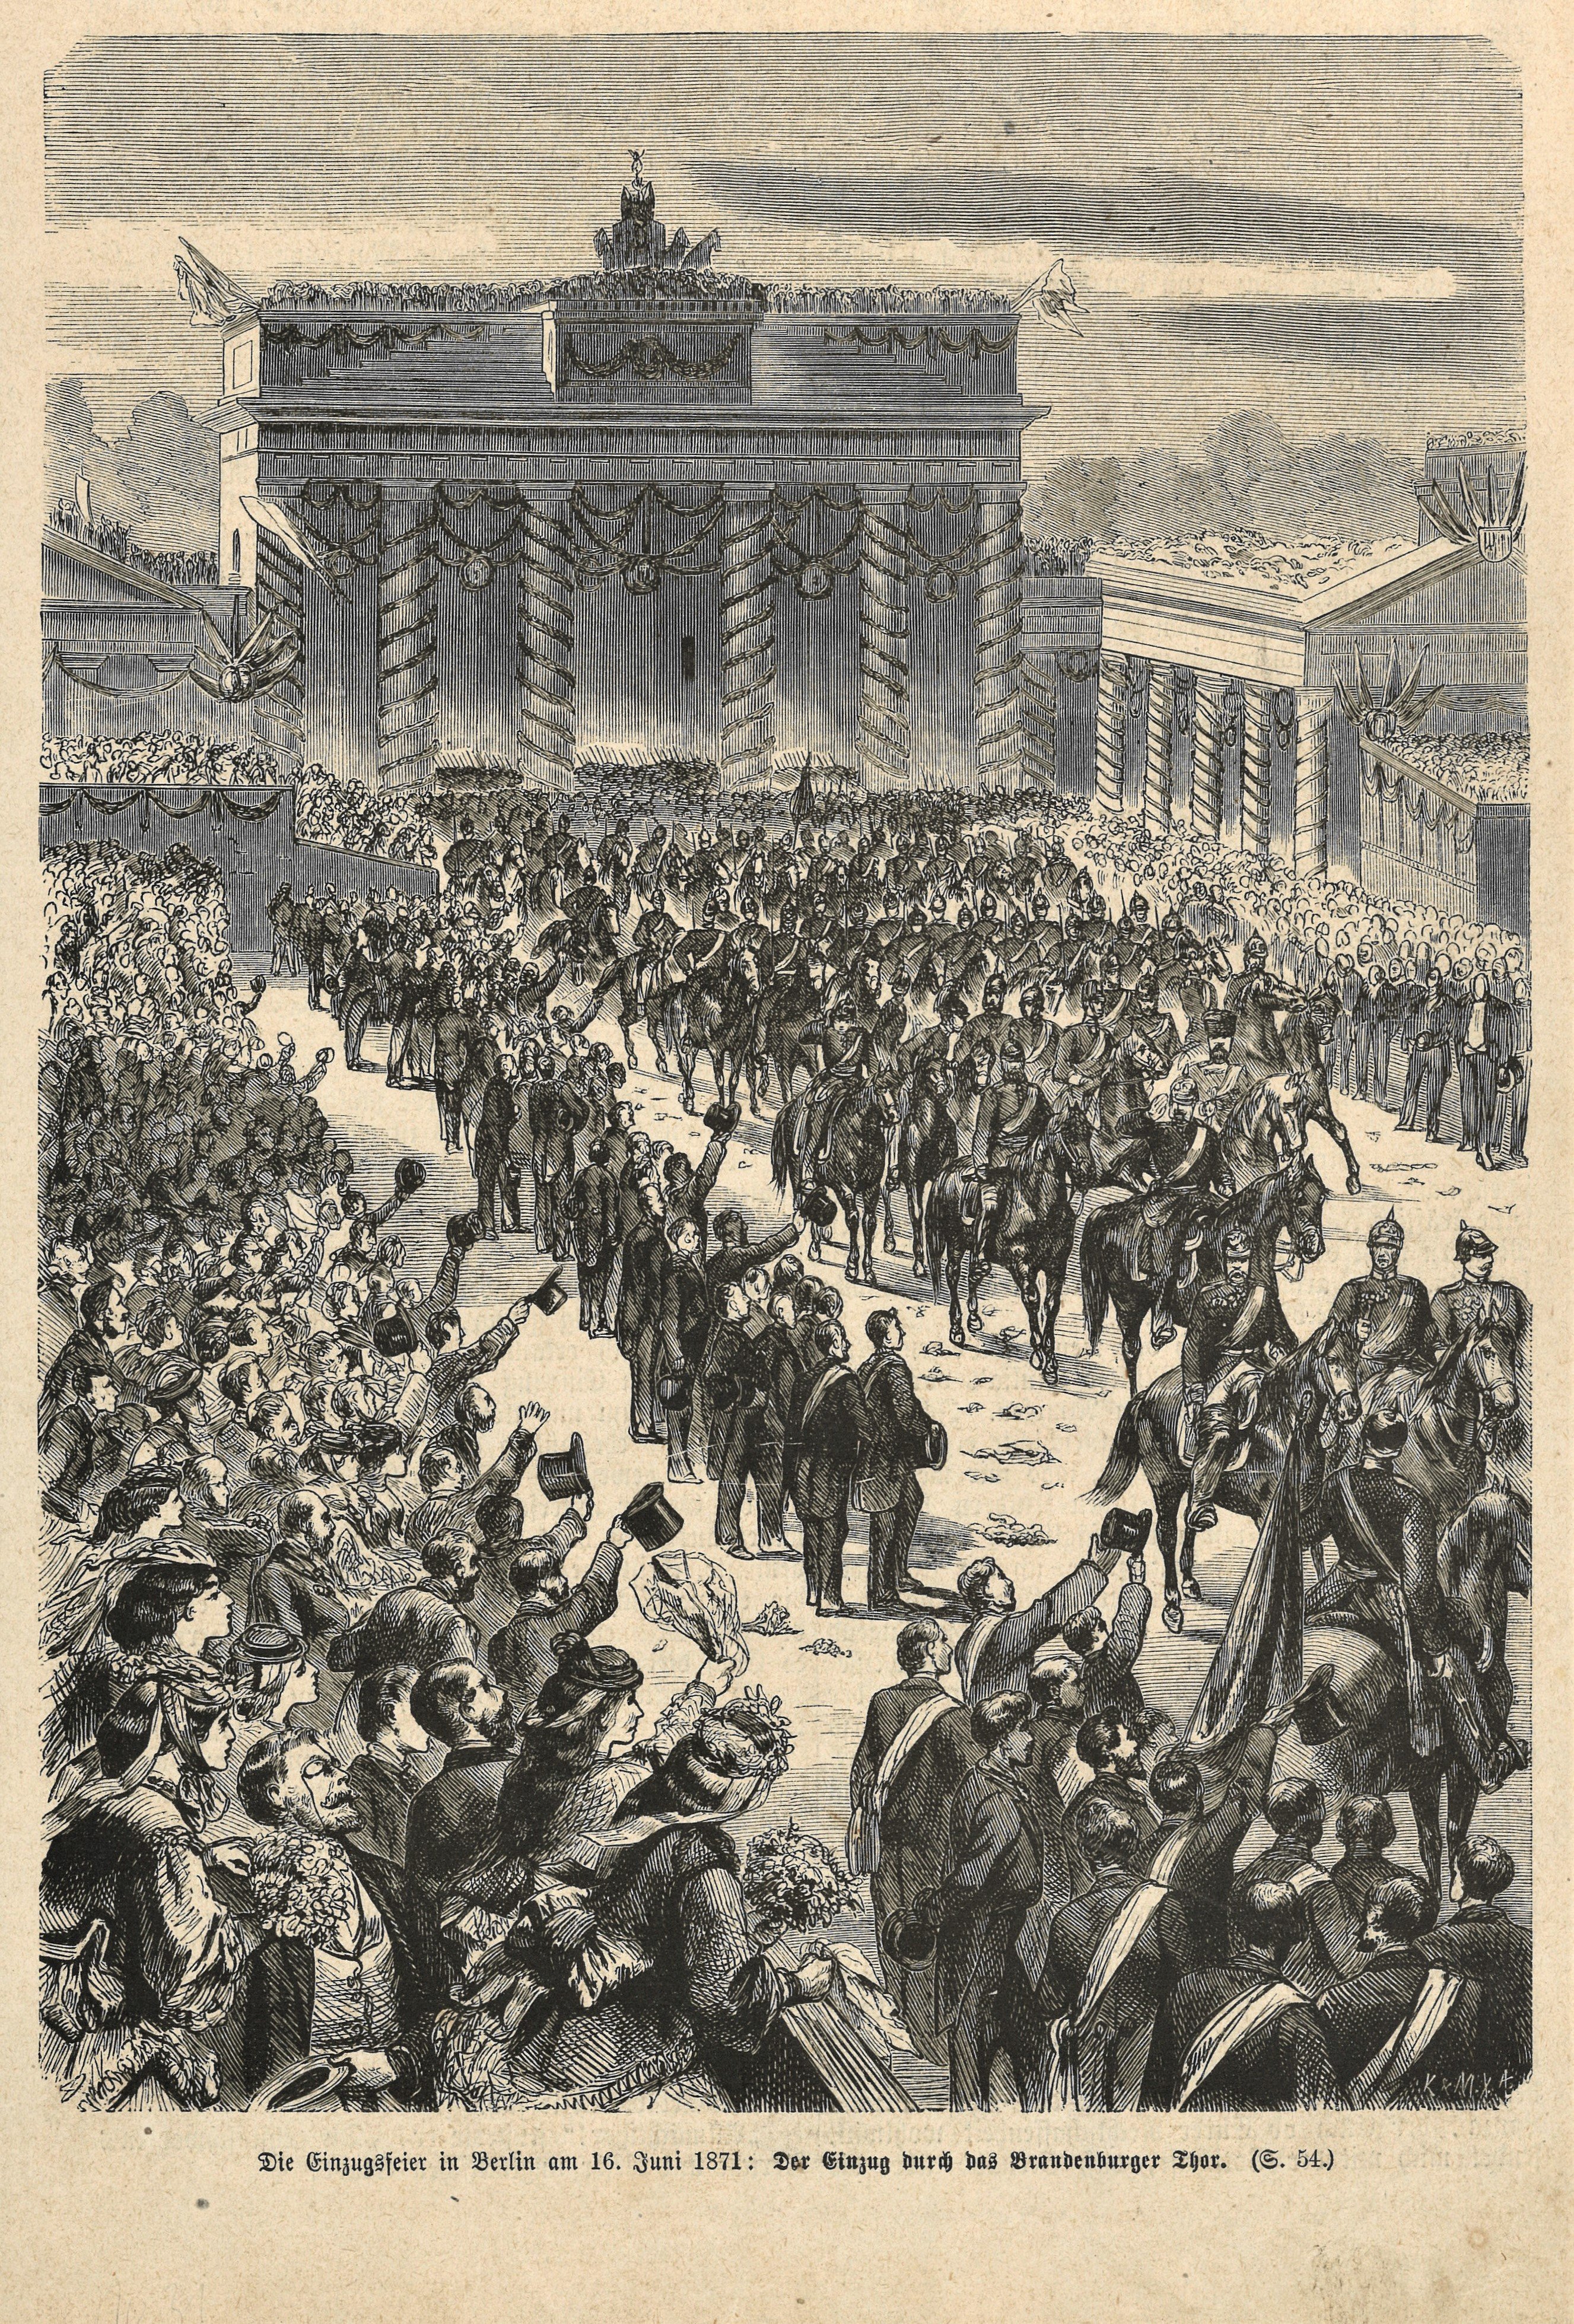 Siegesfeier am Brandenburger Tor in Berlin am 16. Juni 1871 (Landesgeschichtliche Vereinigung für die Mark Brandenburg e.V., Archiv CC BY)